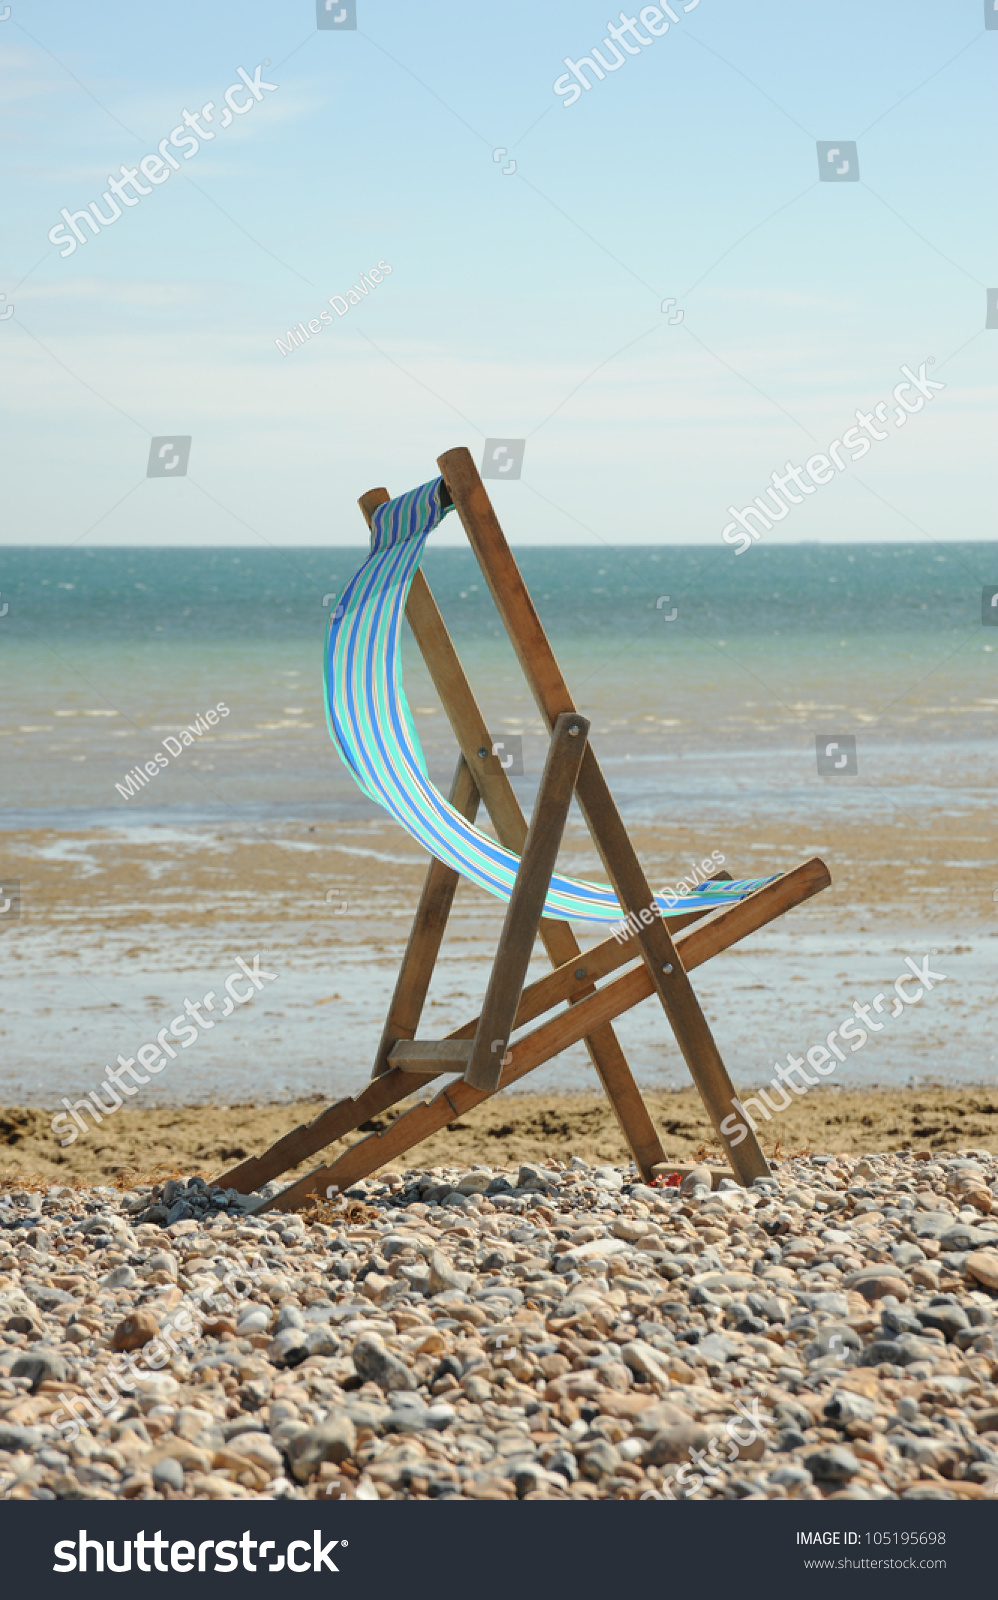 Deck Chair On Beach Stock Photo 105195698 - Shutterstock